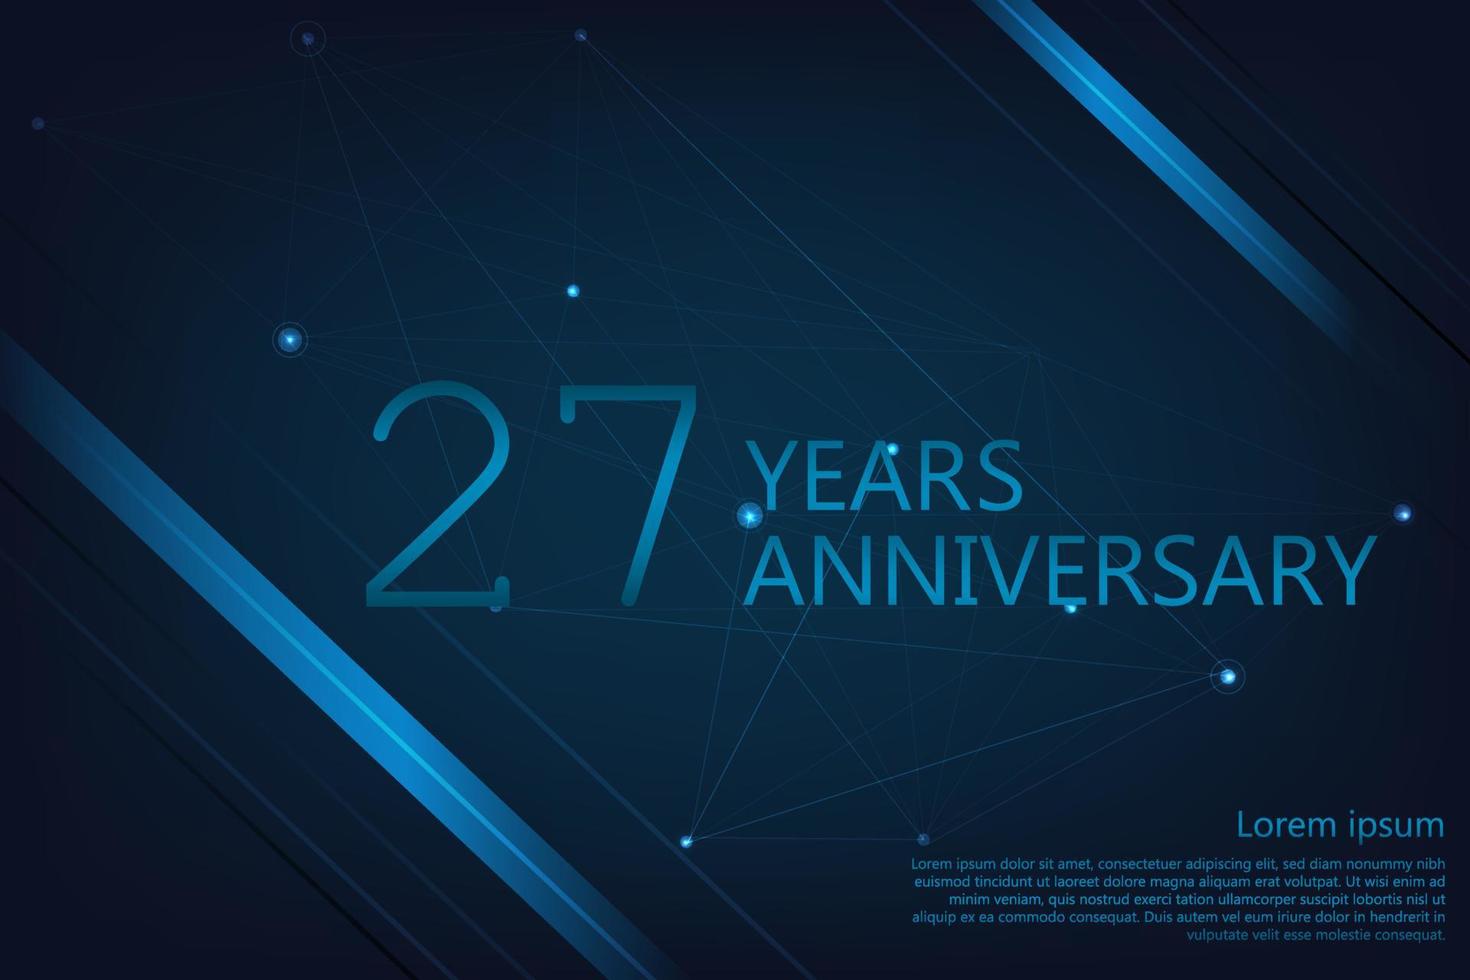 Bannière anniversaire 27 ans. modèle d'affiche pour célébrer la fête d'anniversaire. illustration vectorielle vecteur